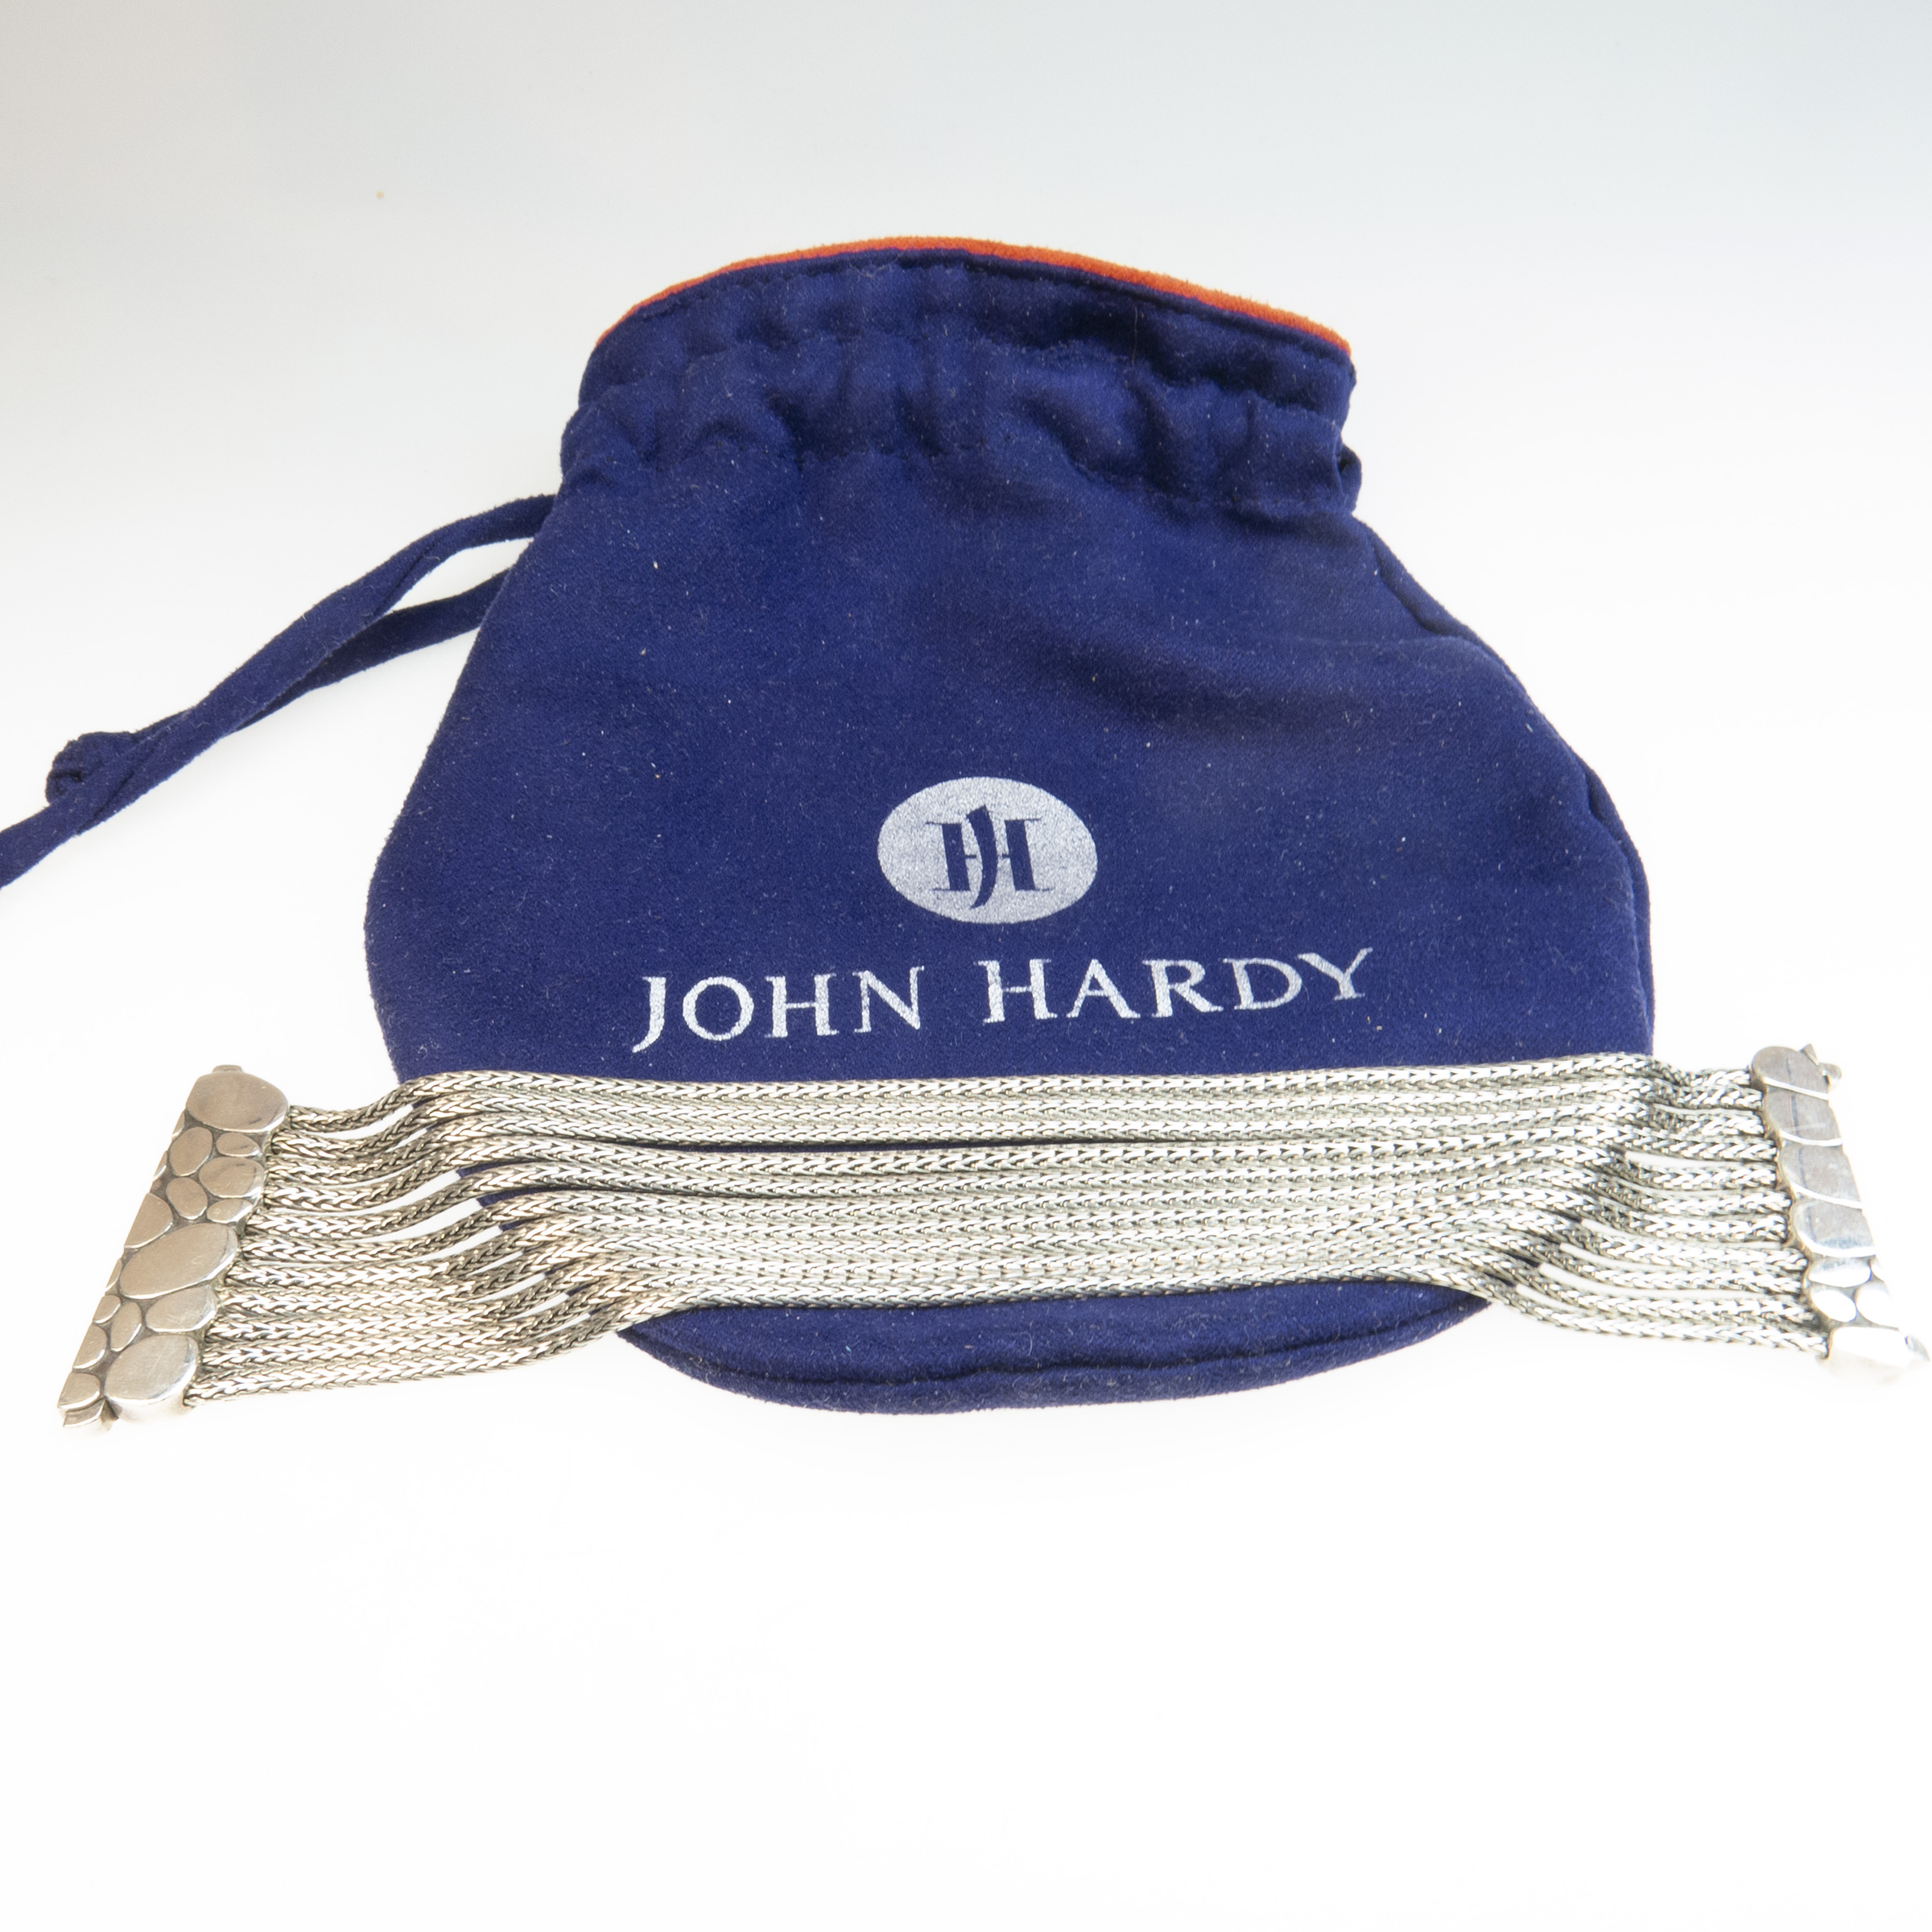 John Hardy American Sterling Silver Bracelet